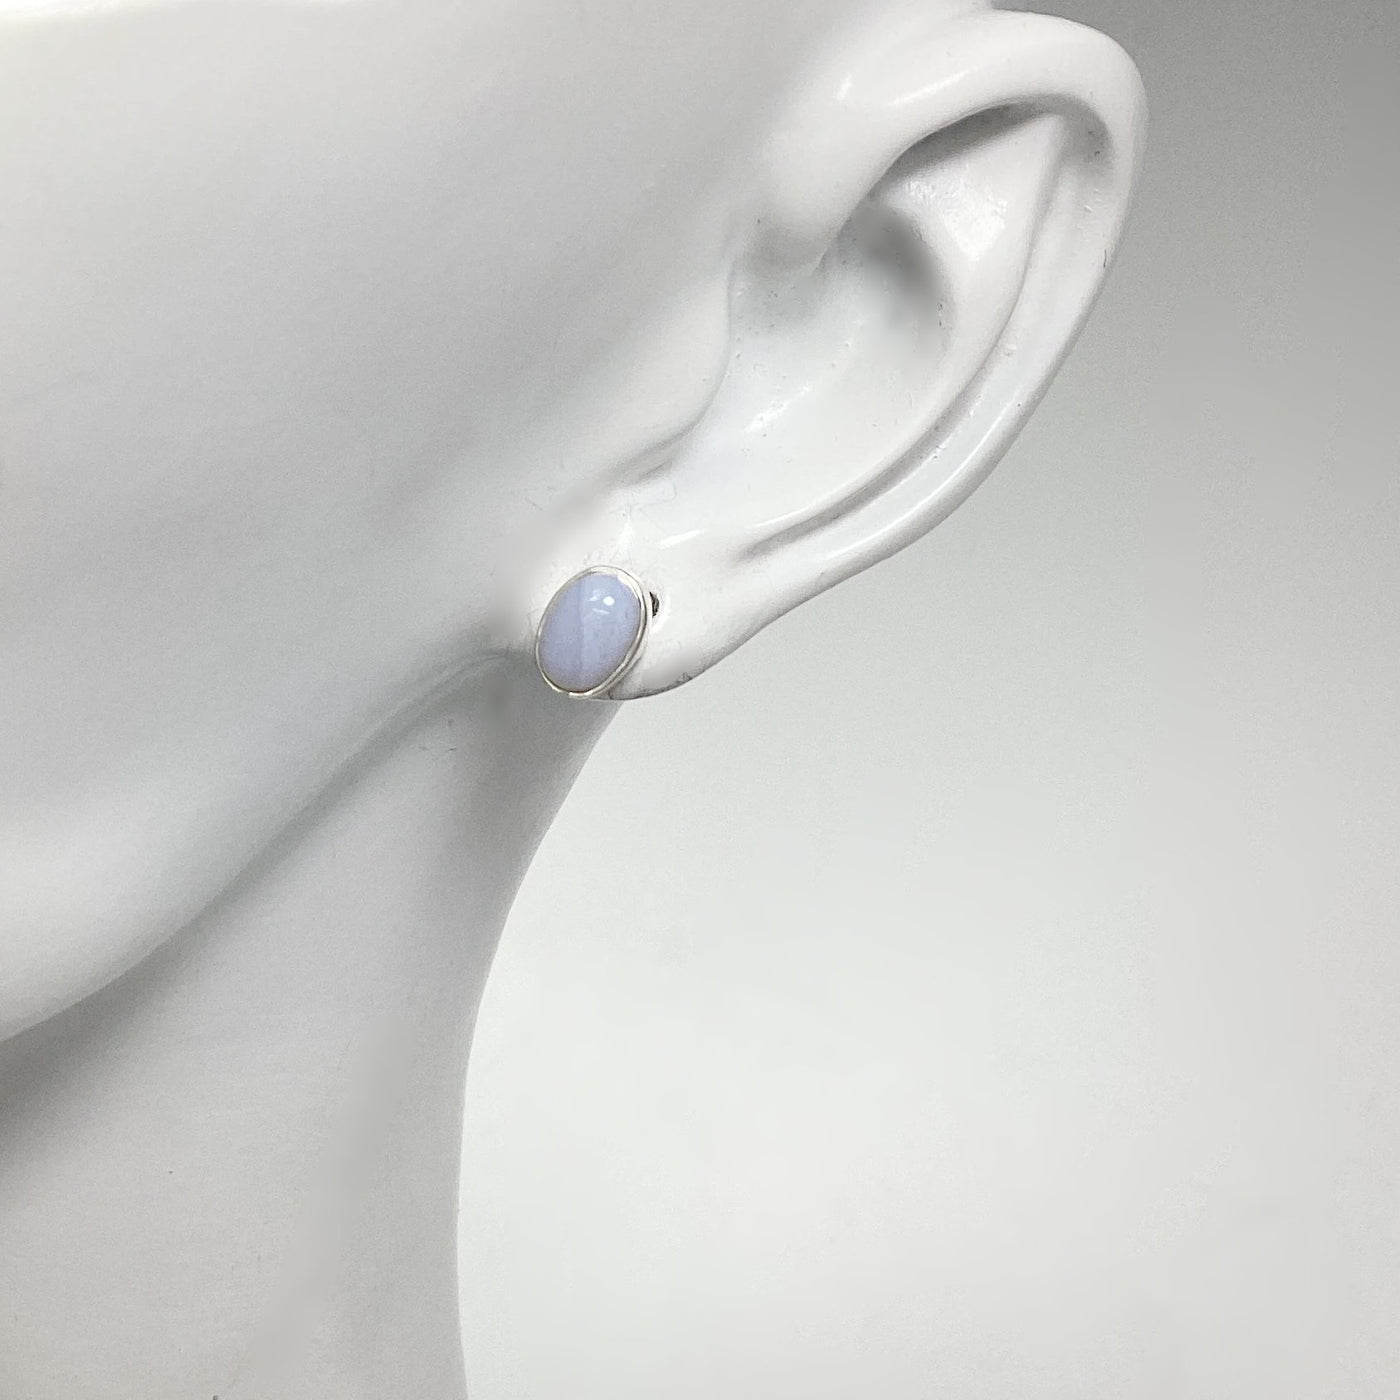 Blue Lace Agate Stud Earrings